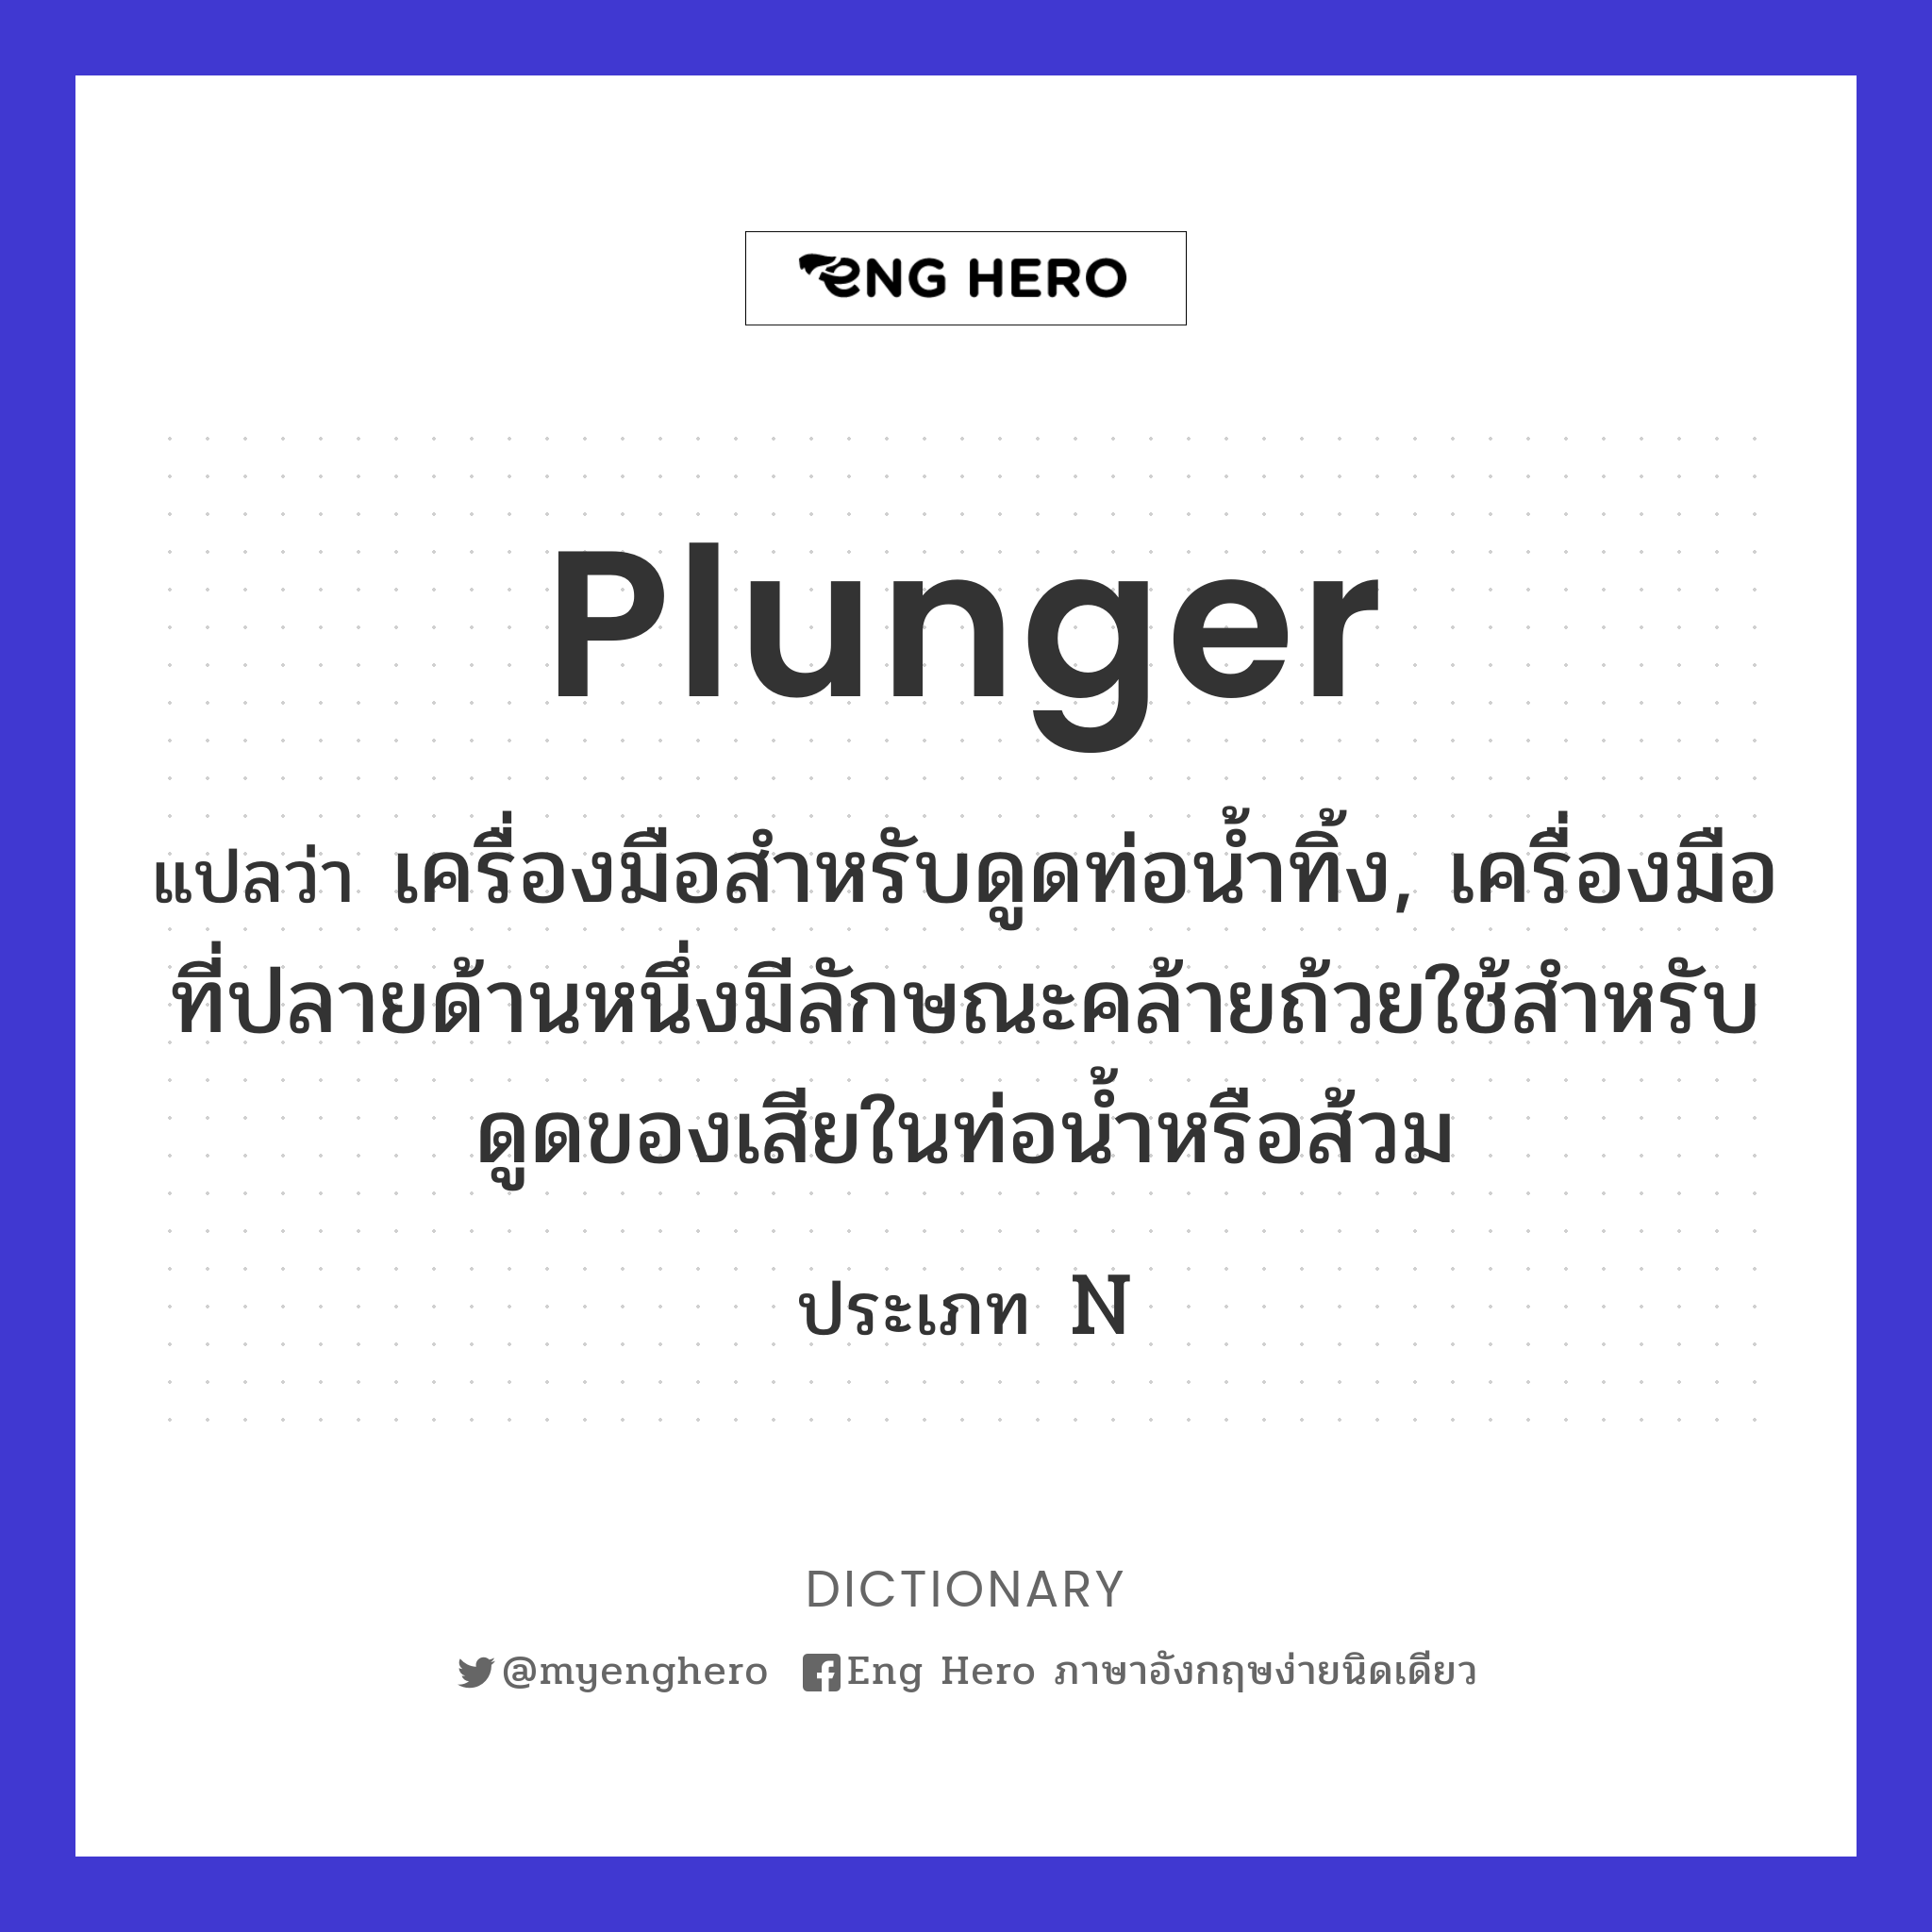 plunger